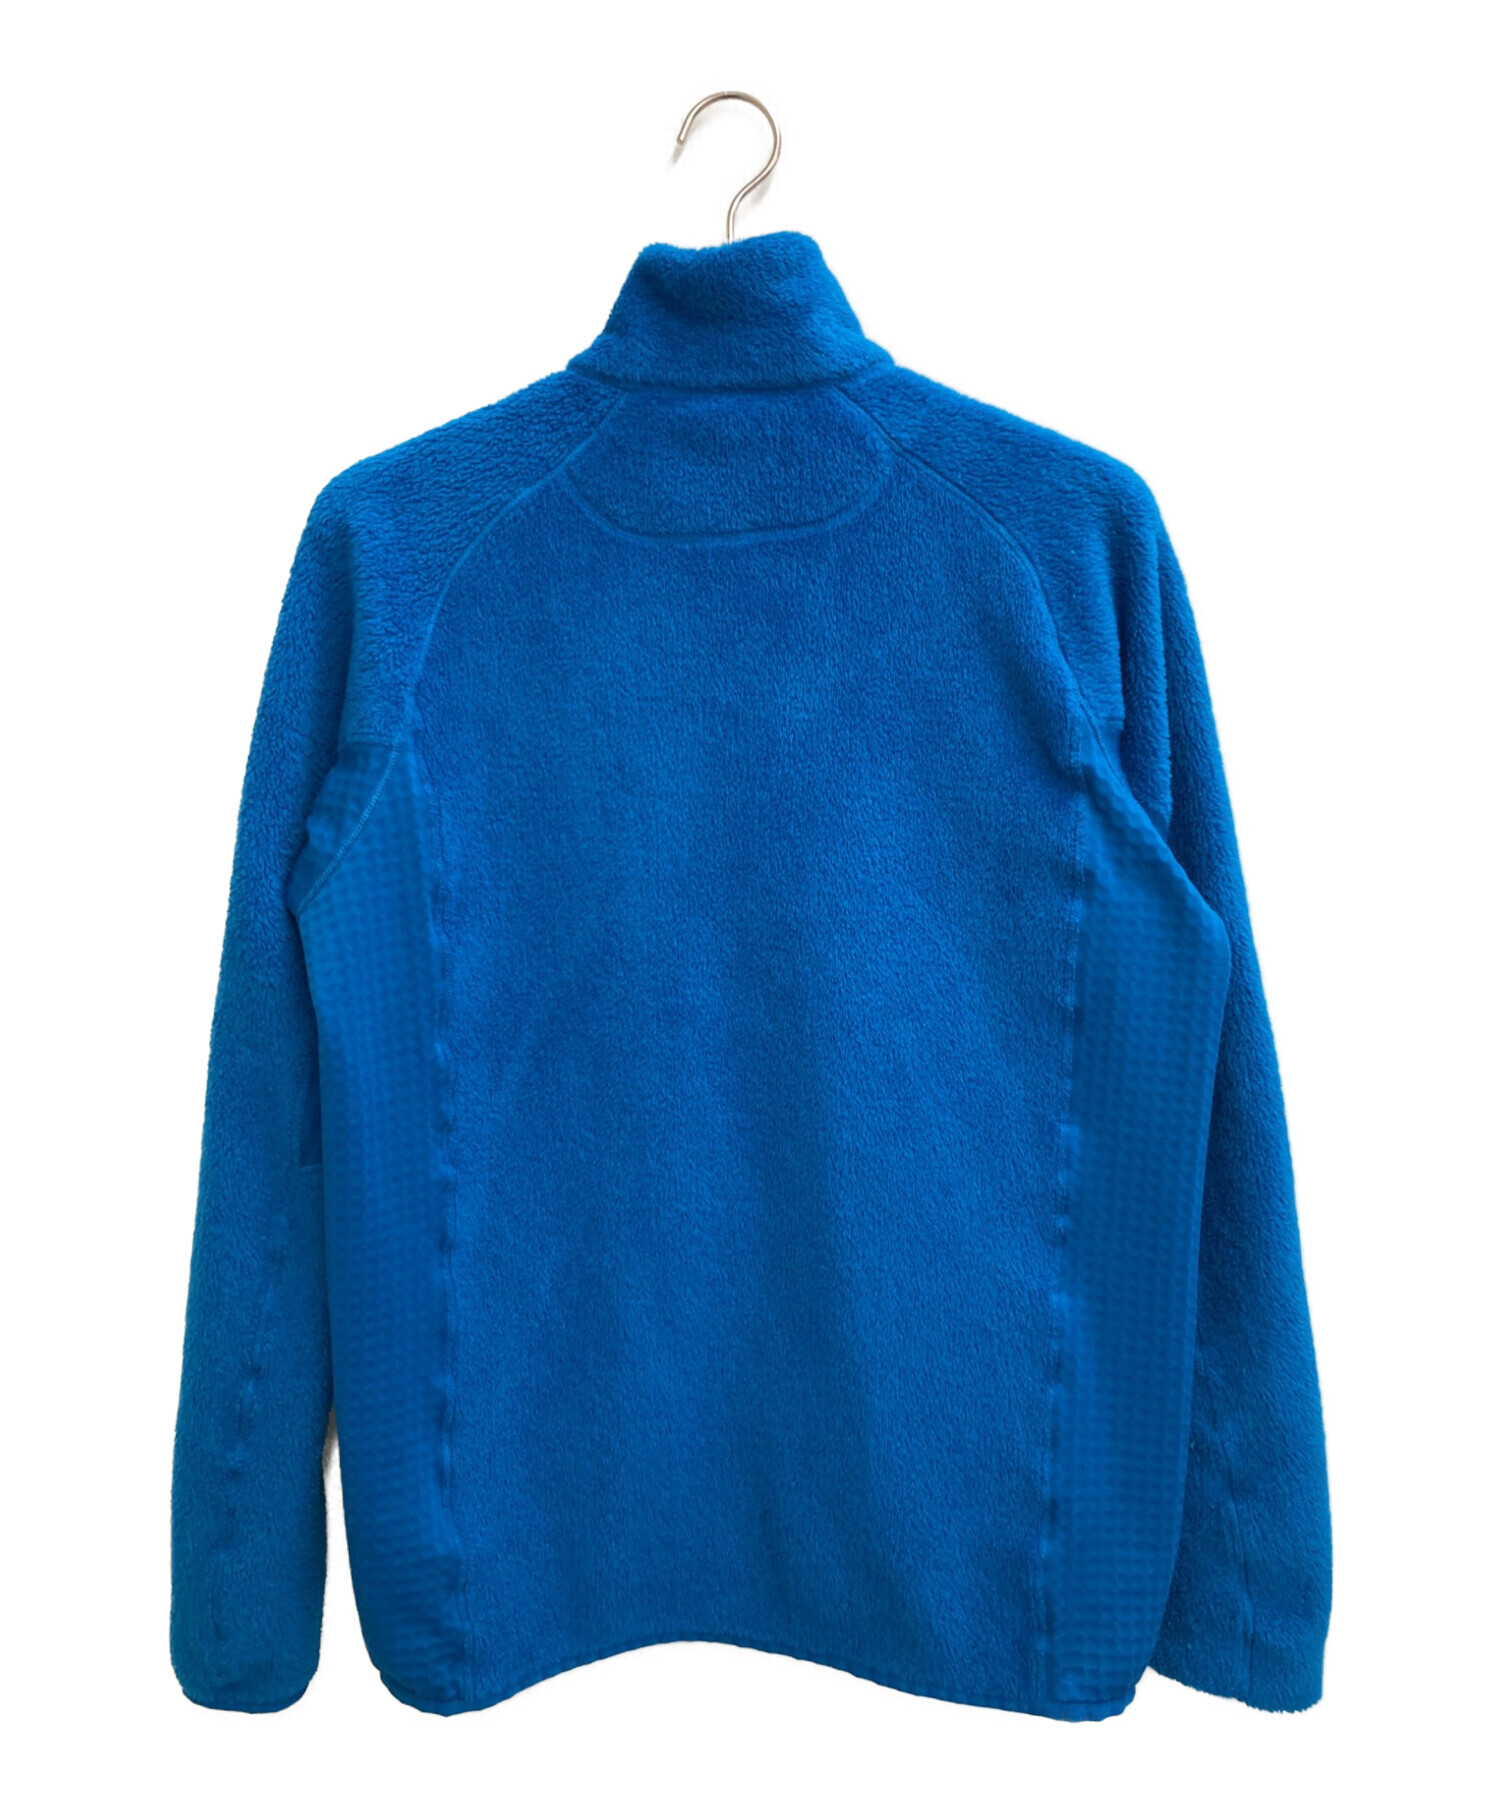 Patagonia (パタゴニア) R2ジャケット ブルー サイズ:M